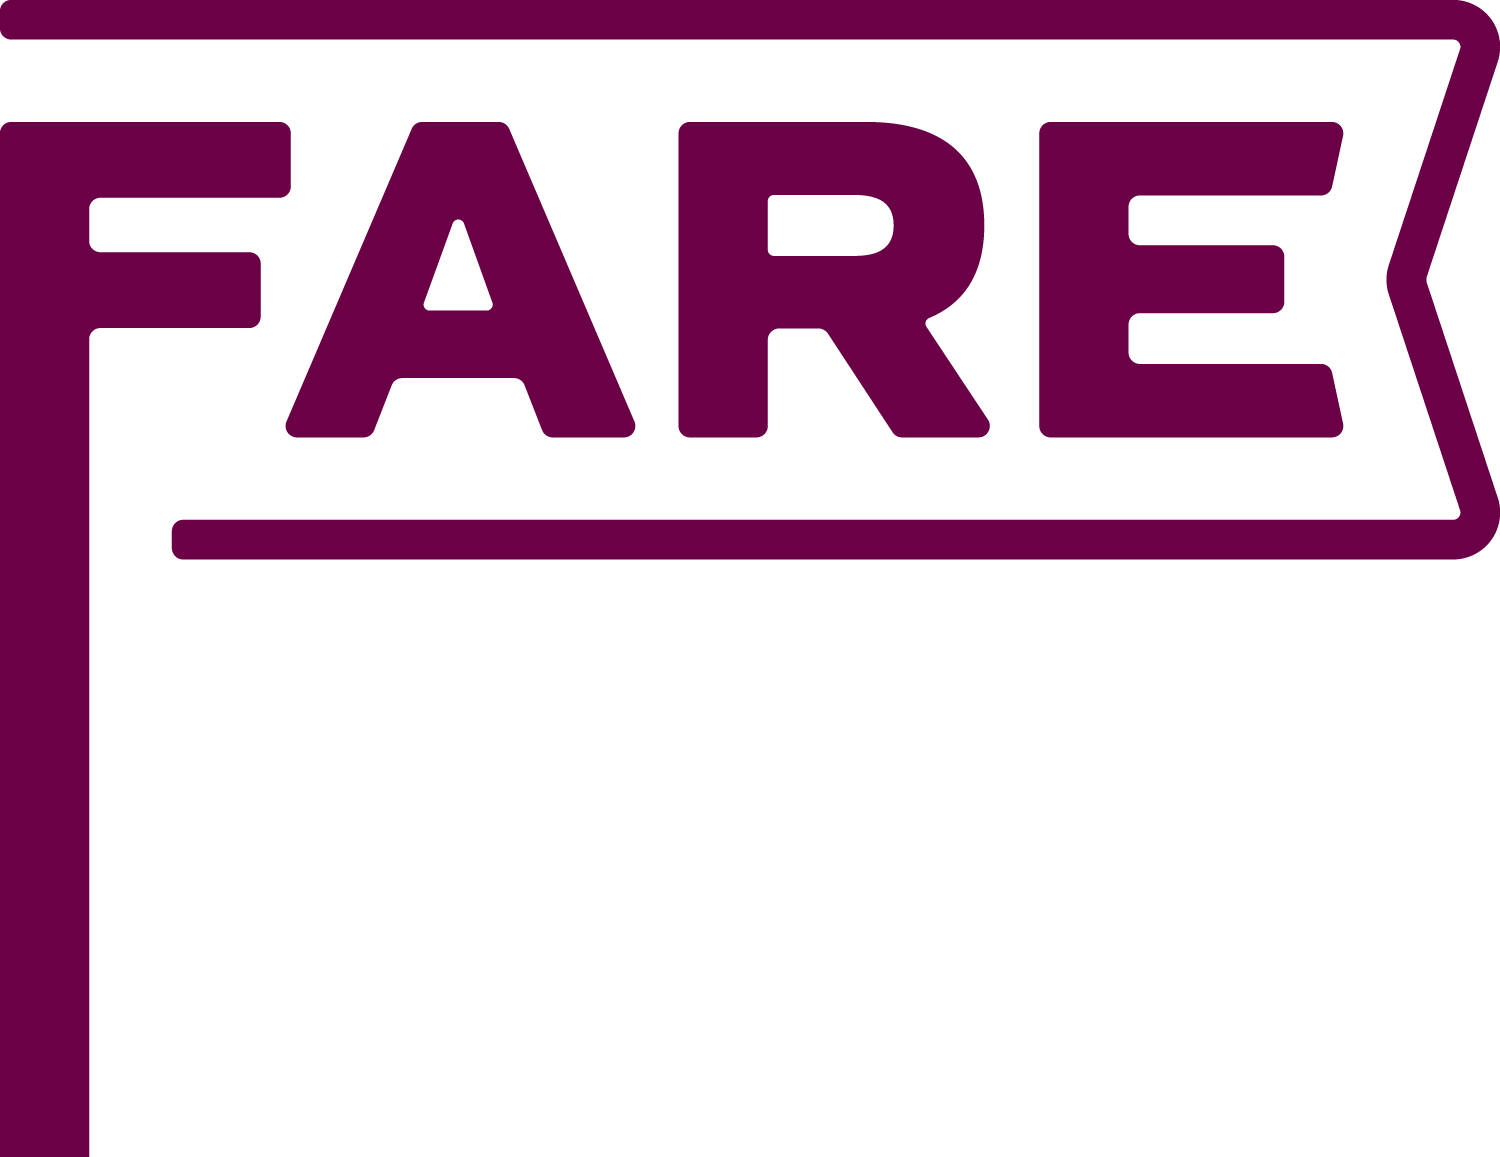 FARE Group - Fare For All